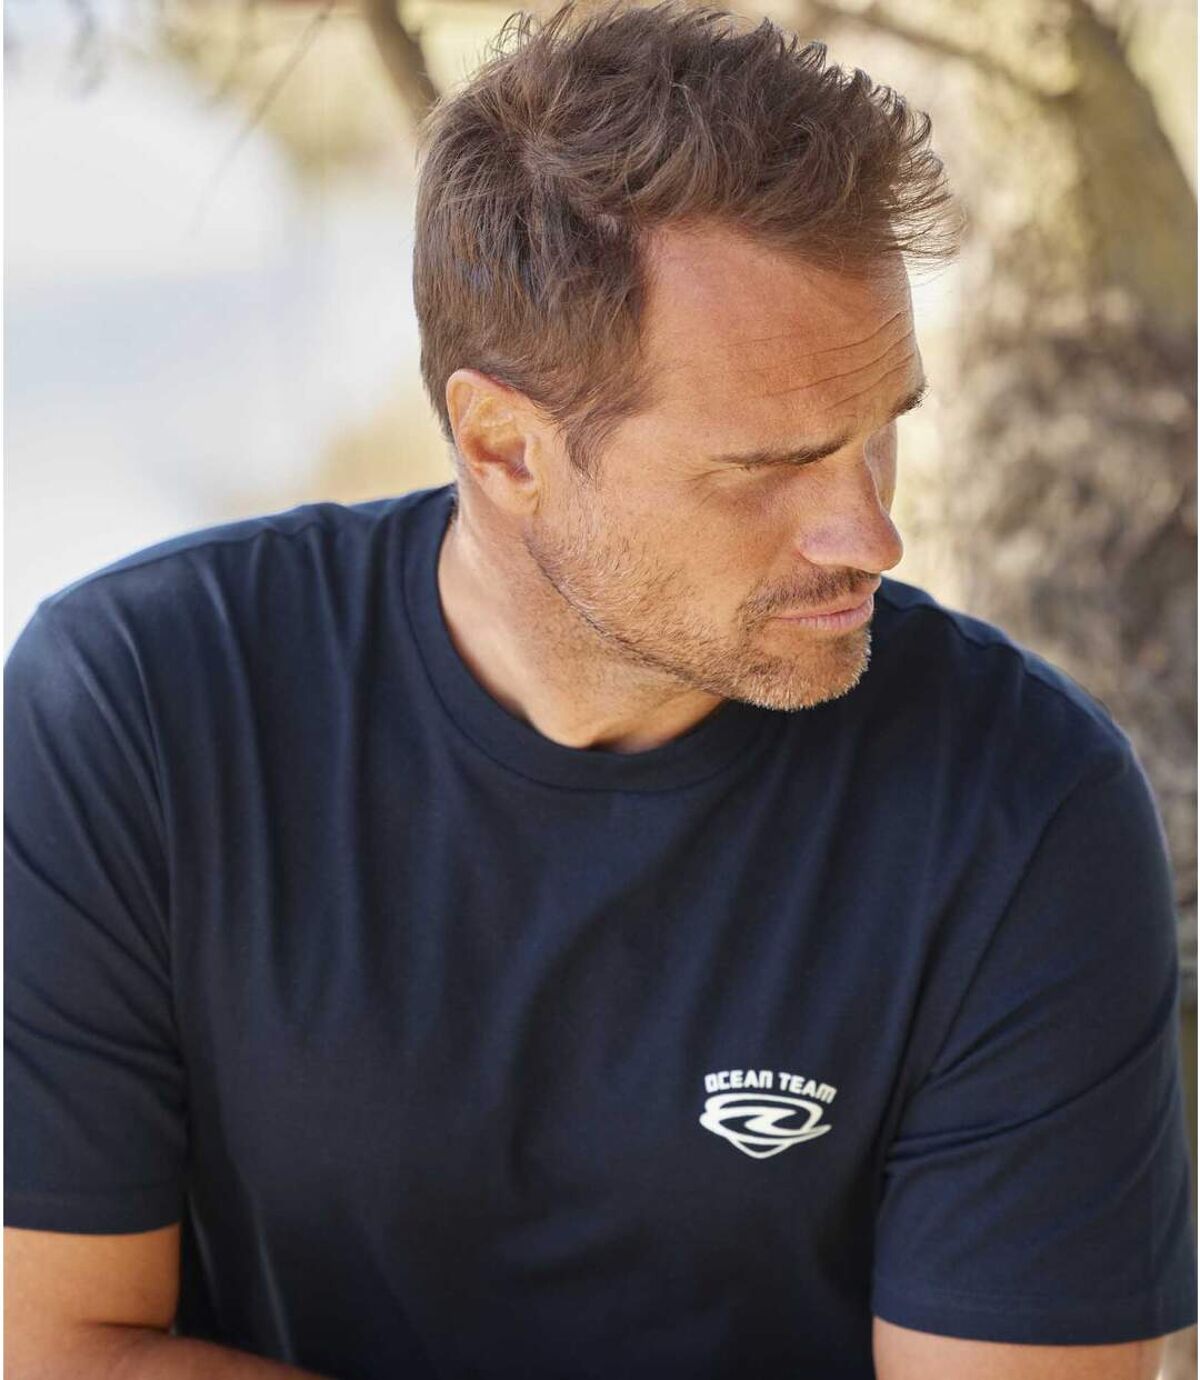 Zestaw 4 t-shirtów Ocean Team Atlas For Men